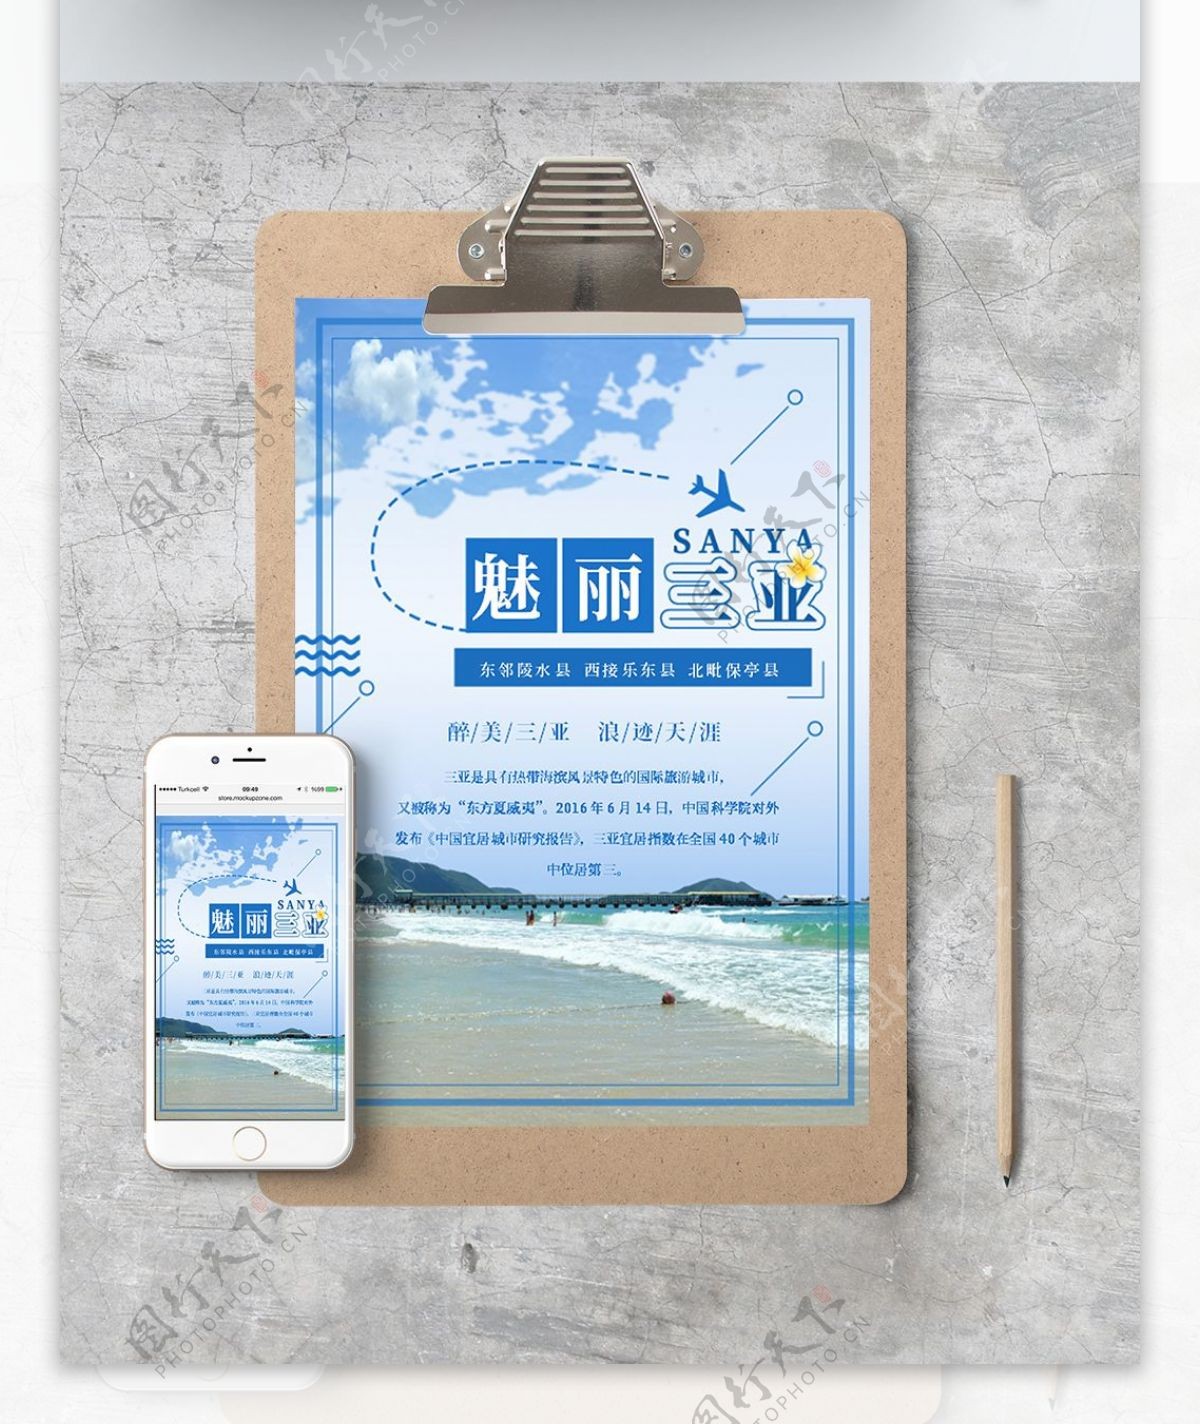 简约时尚三亚旅游宣传海报